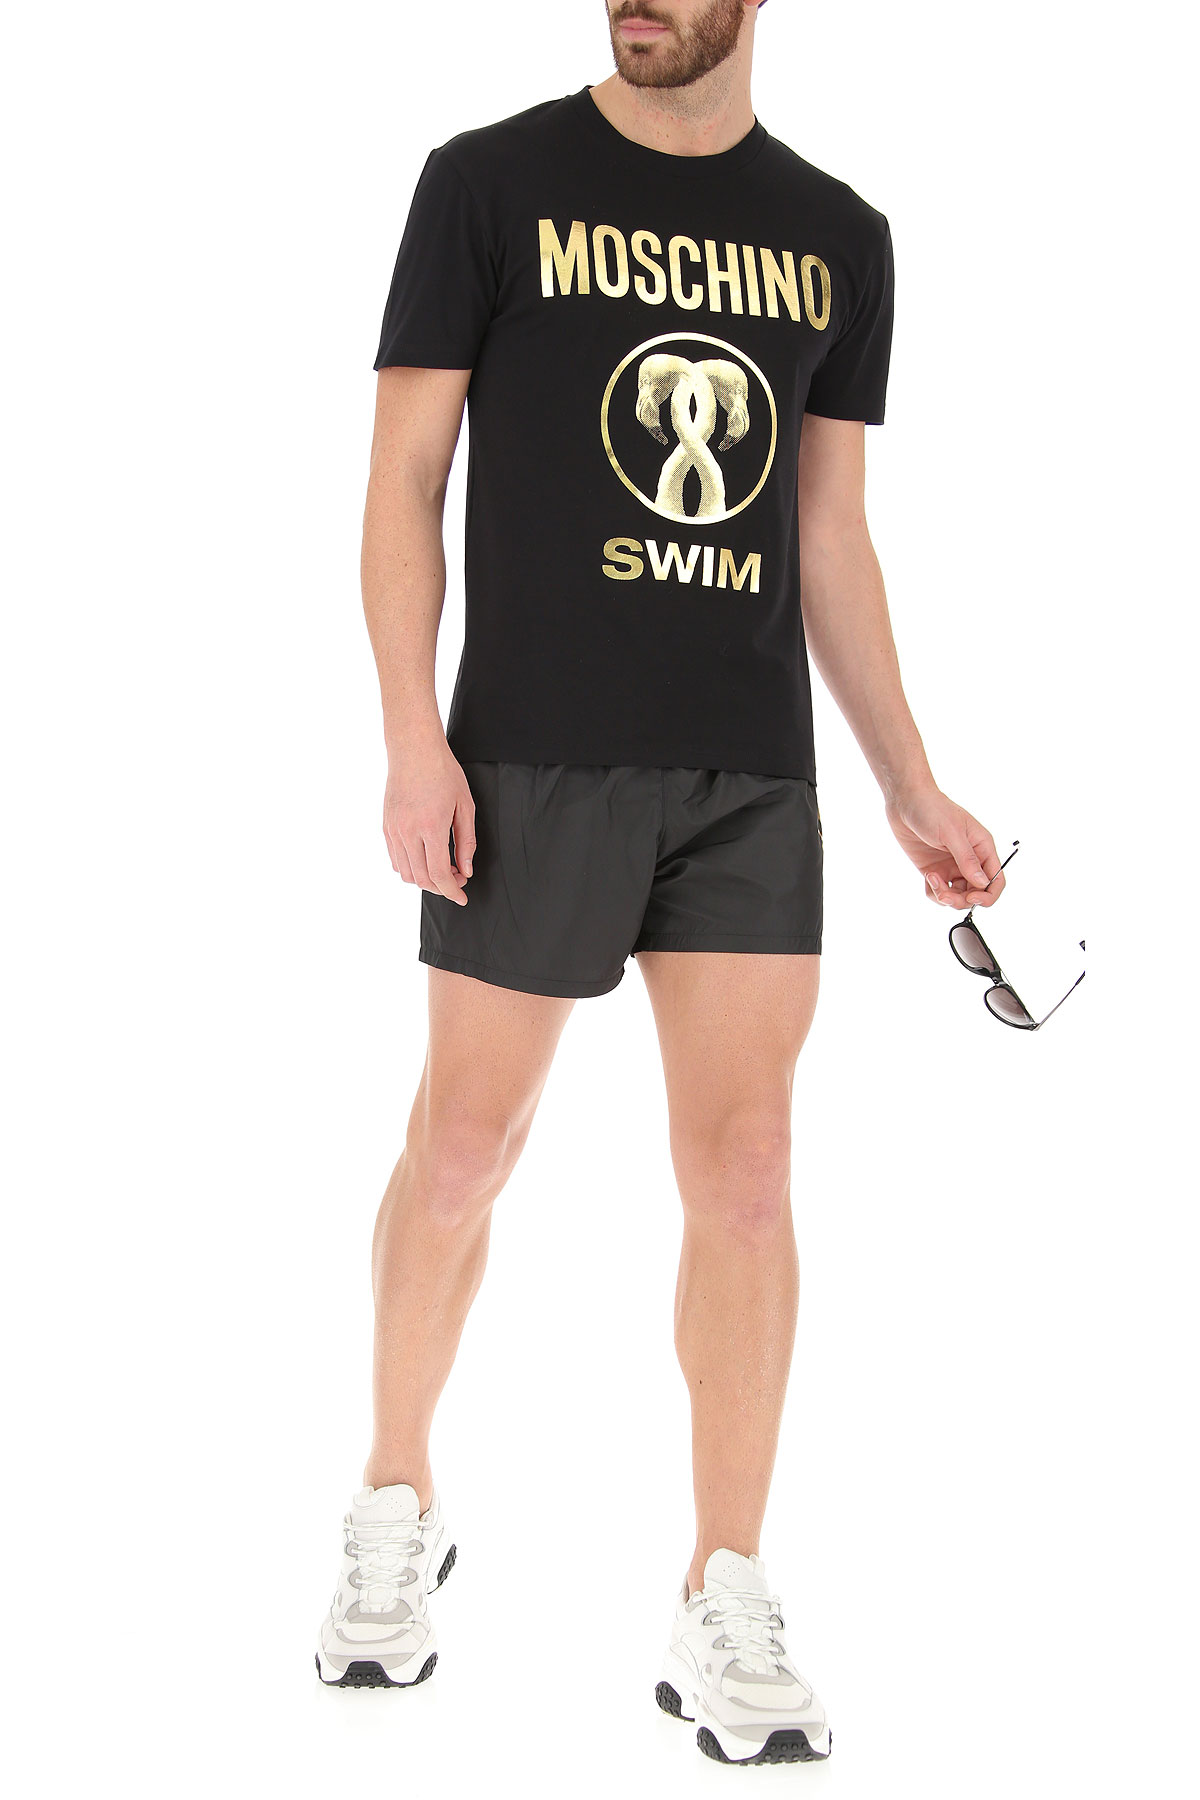 Mens Swimwear Moschino, Style code: v1910-2303-0555